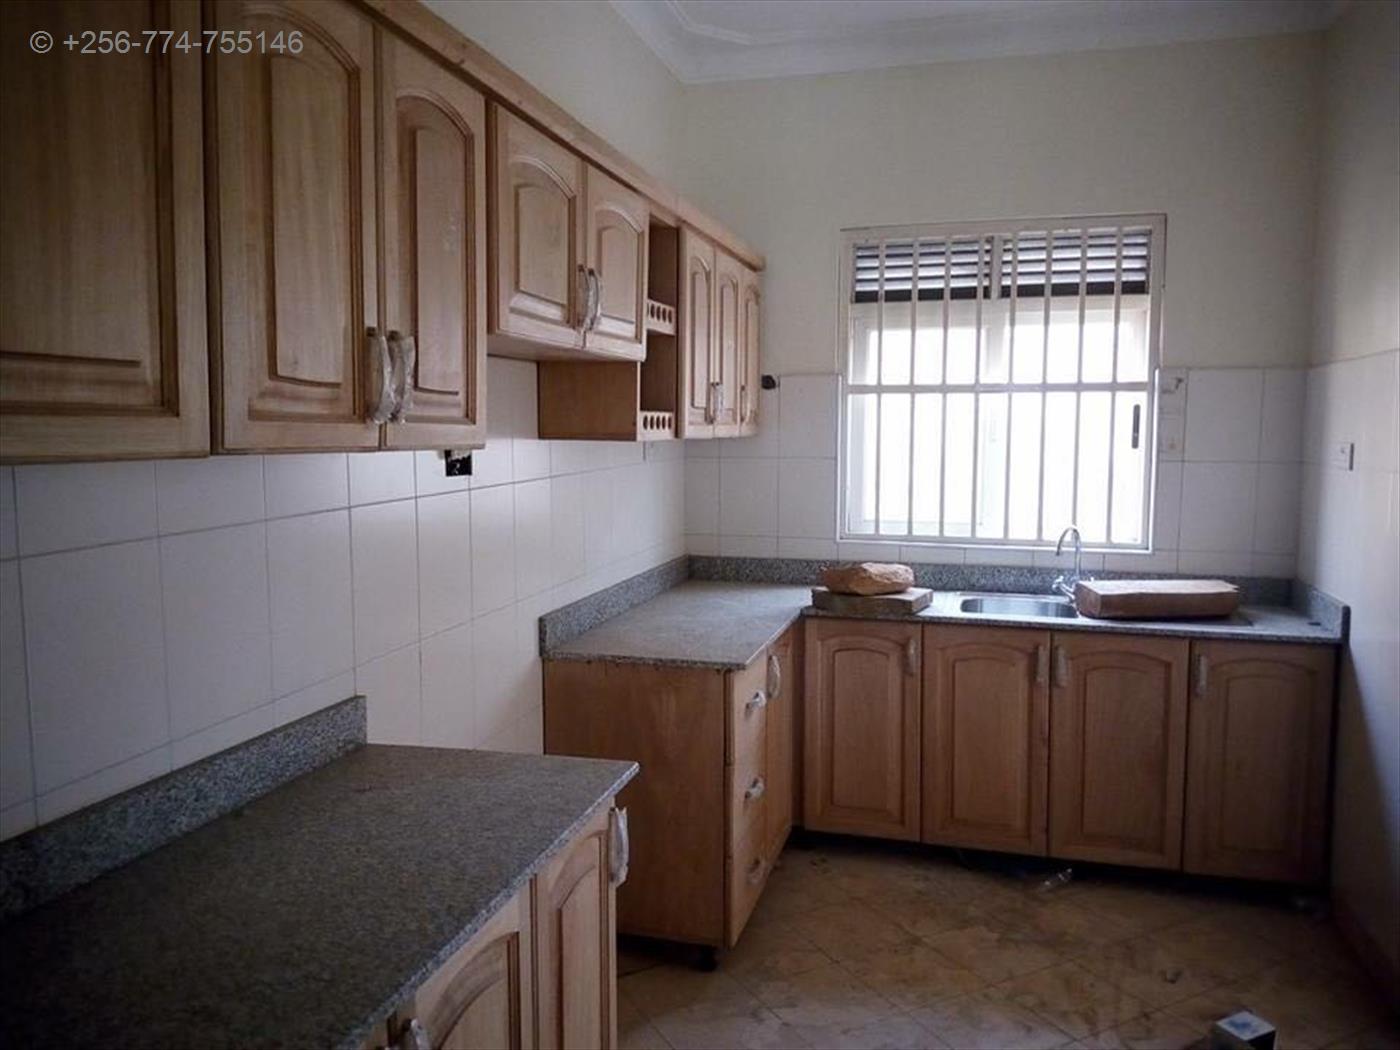 Apartment for rent in Kireka Kampala